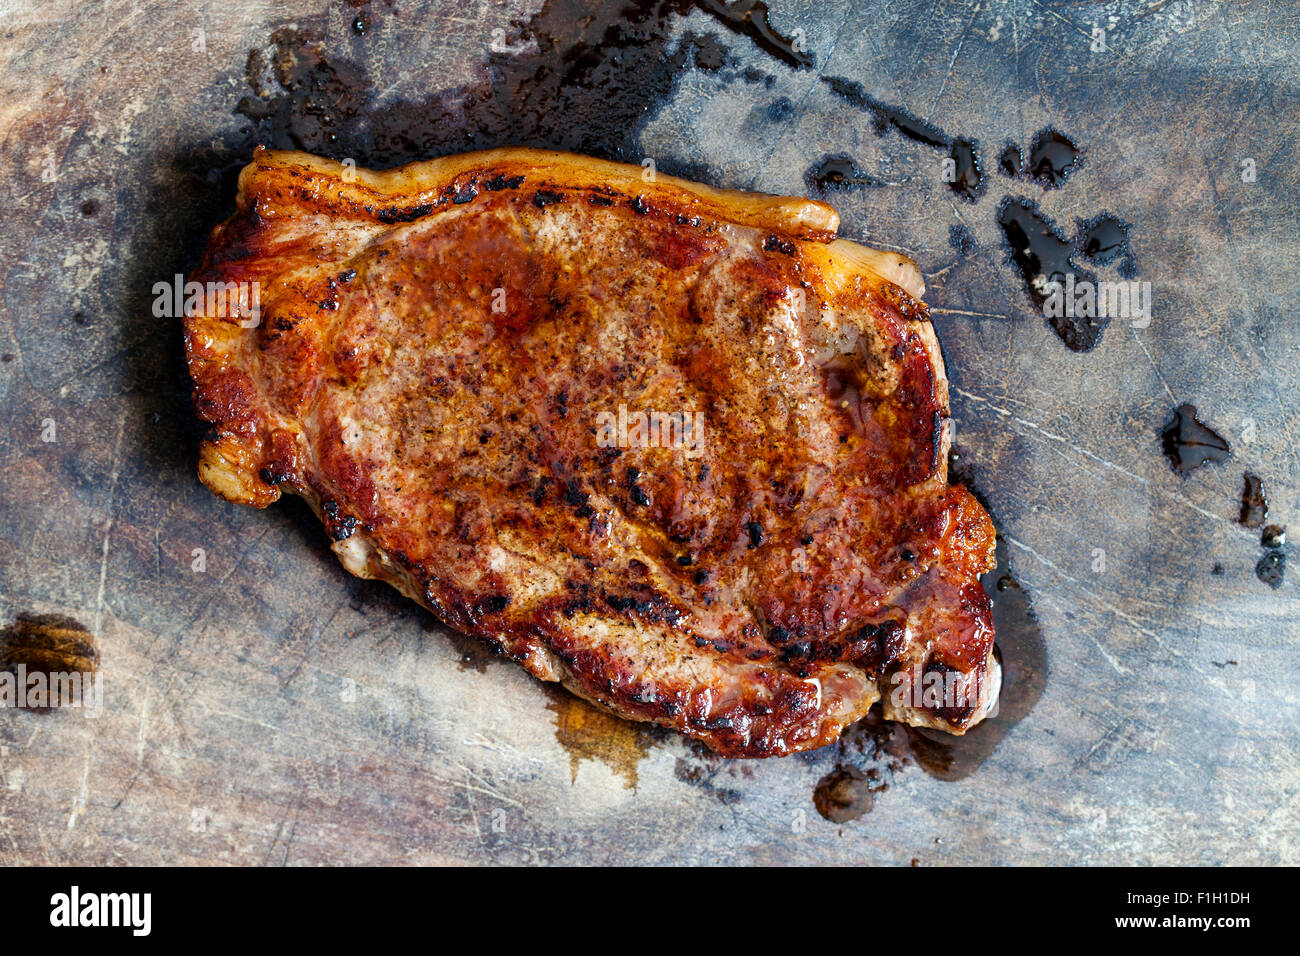 Sirloin steak Stock Photo